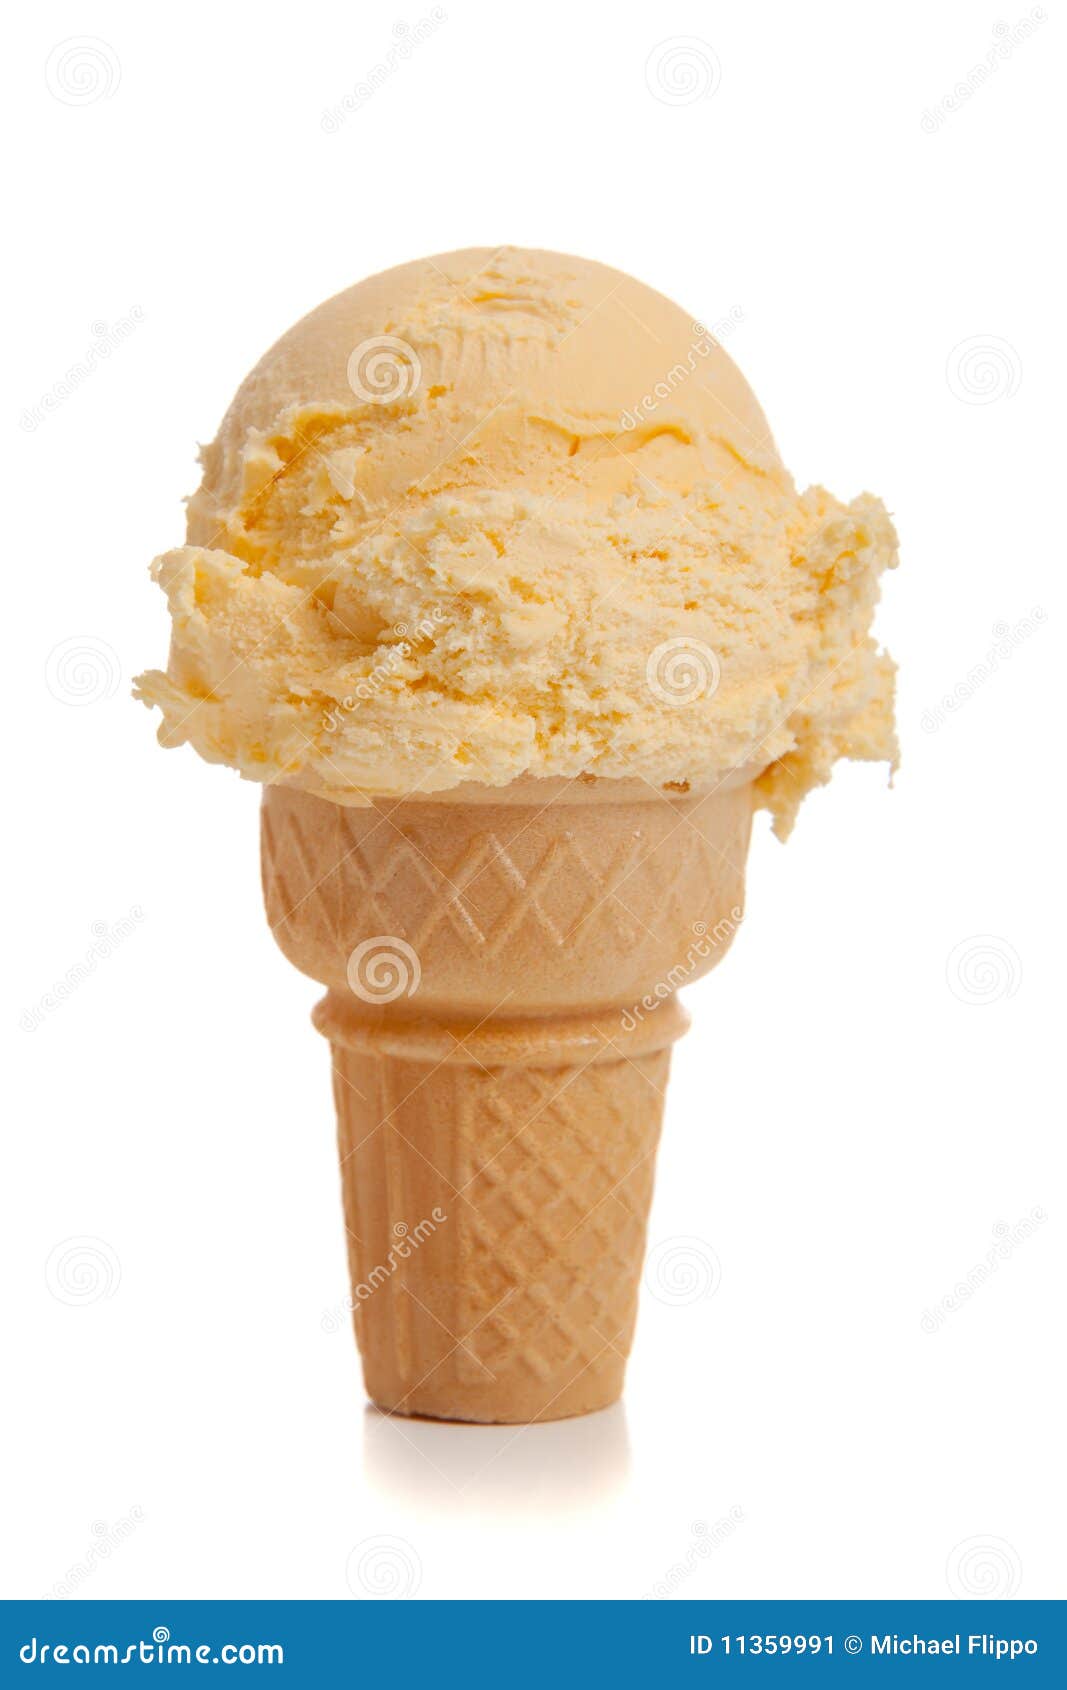 vanilla ice cream cone a white